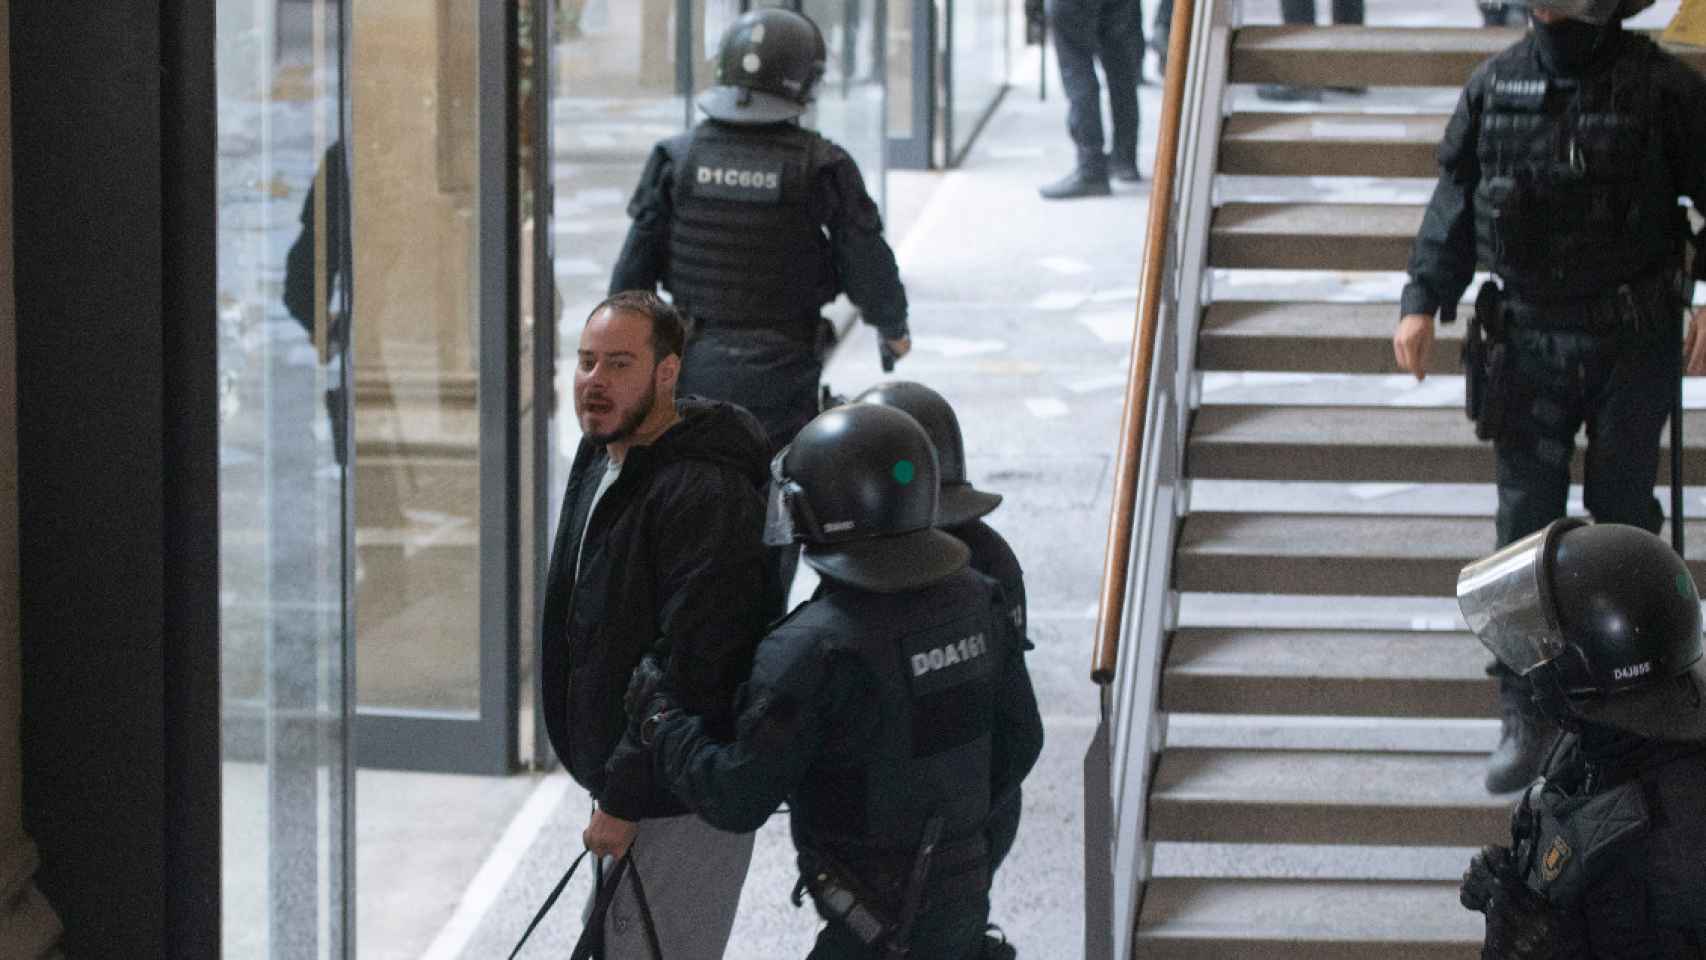 Pablo Hasel detenido en la UdL, donde agredió a un periodista en 2016 / LORENA SOPENA - EUROPA PRESS